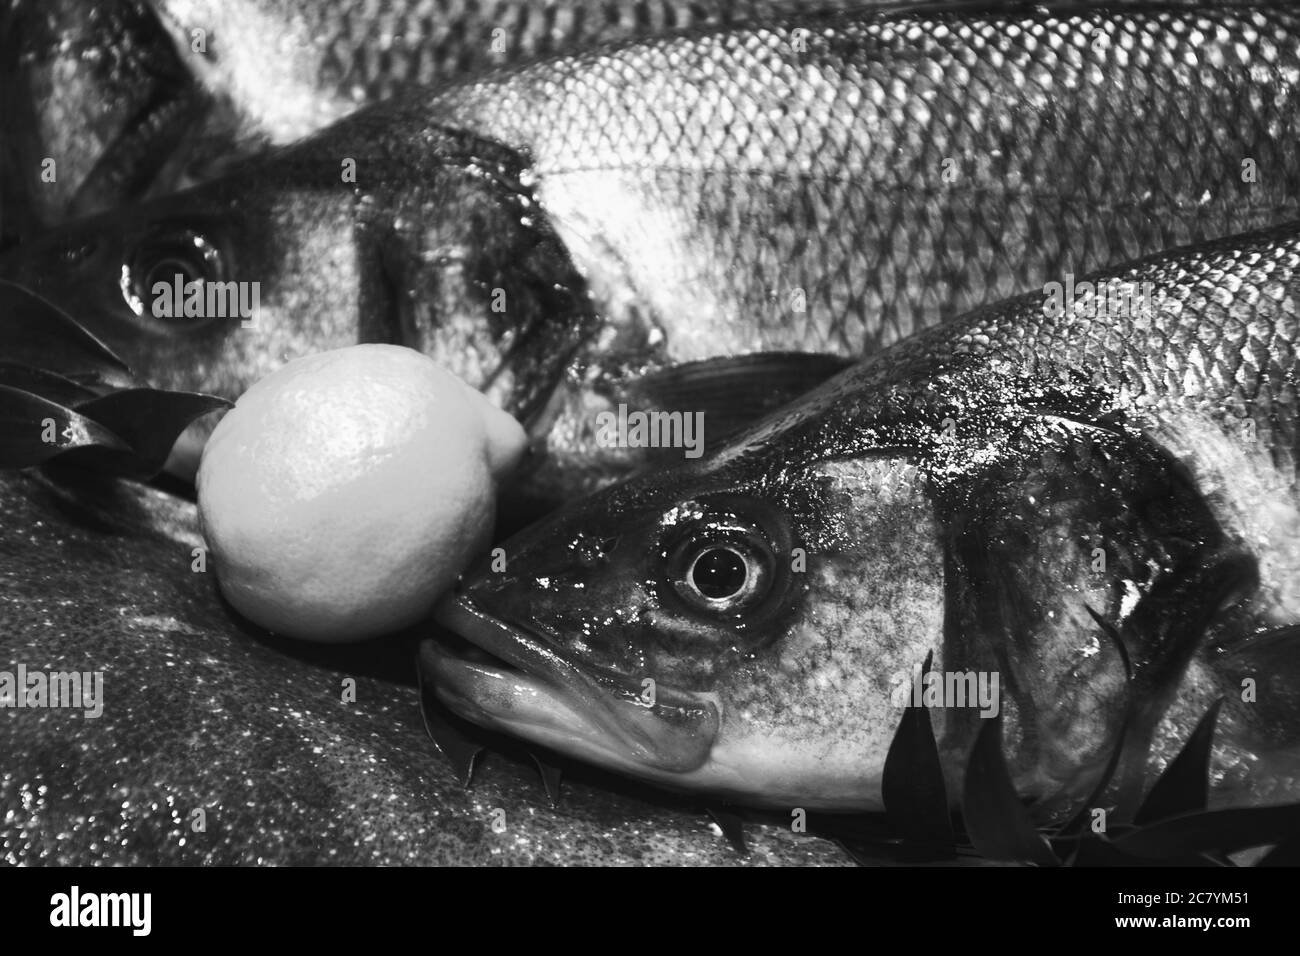 Europäische Bass und Brill zum Verkauf et Fischmarkt in Frankreich. Fisch hat wichtige Nährstoffe wie Protein, Vitamin D, Omega-3. Schwarz-weiß Foto. Stockfoto